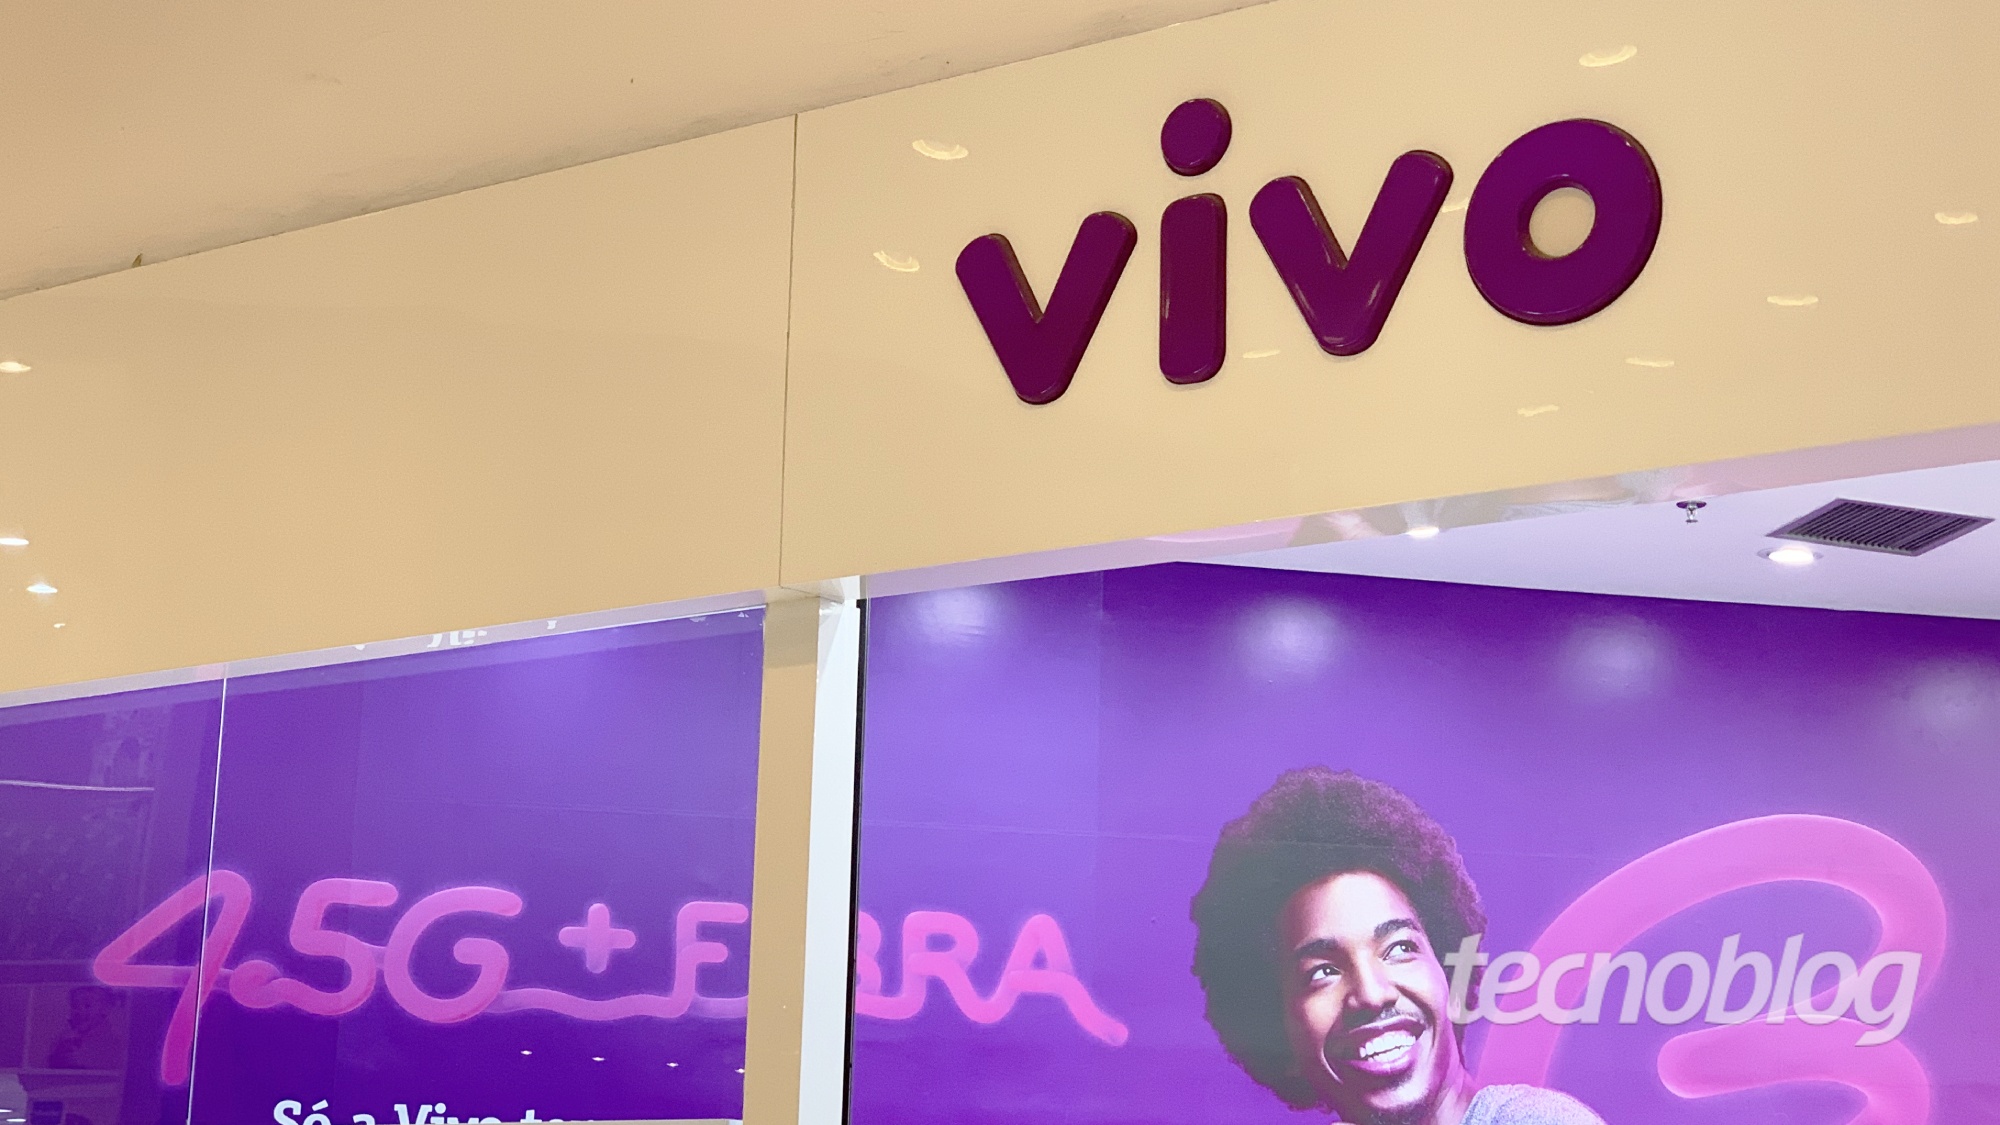 Vivo tem lucro de R$ 1,34 bilhão graças à internet por fibra e pós-pago | Telecomunicações